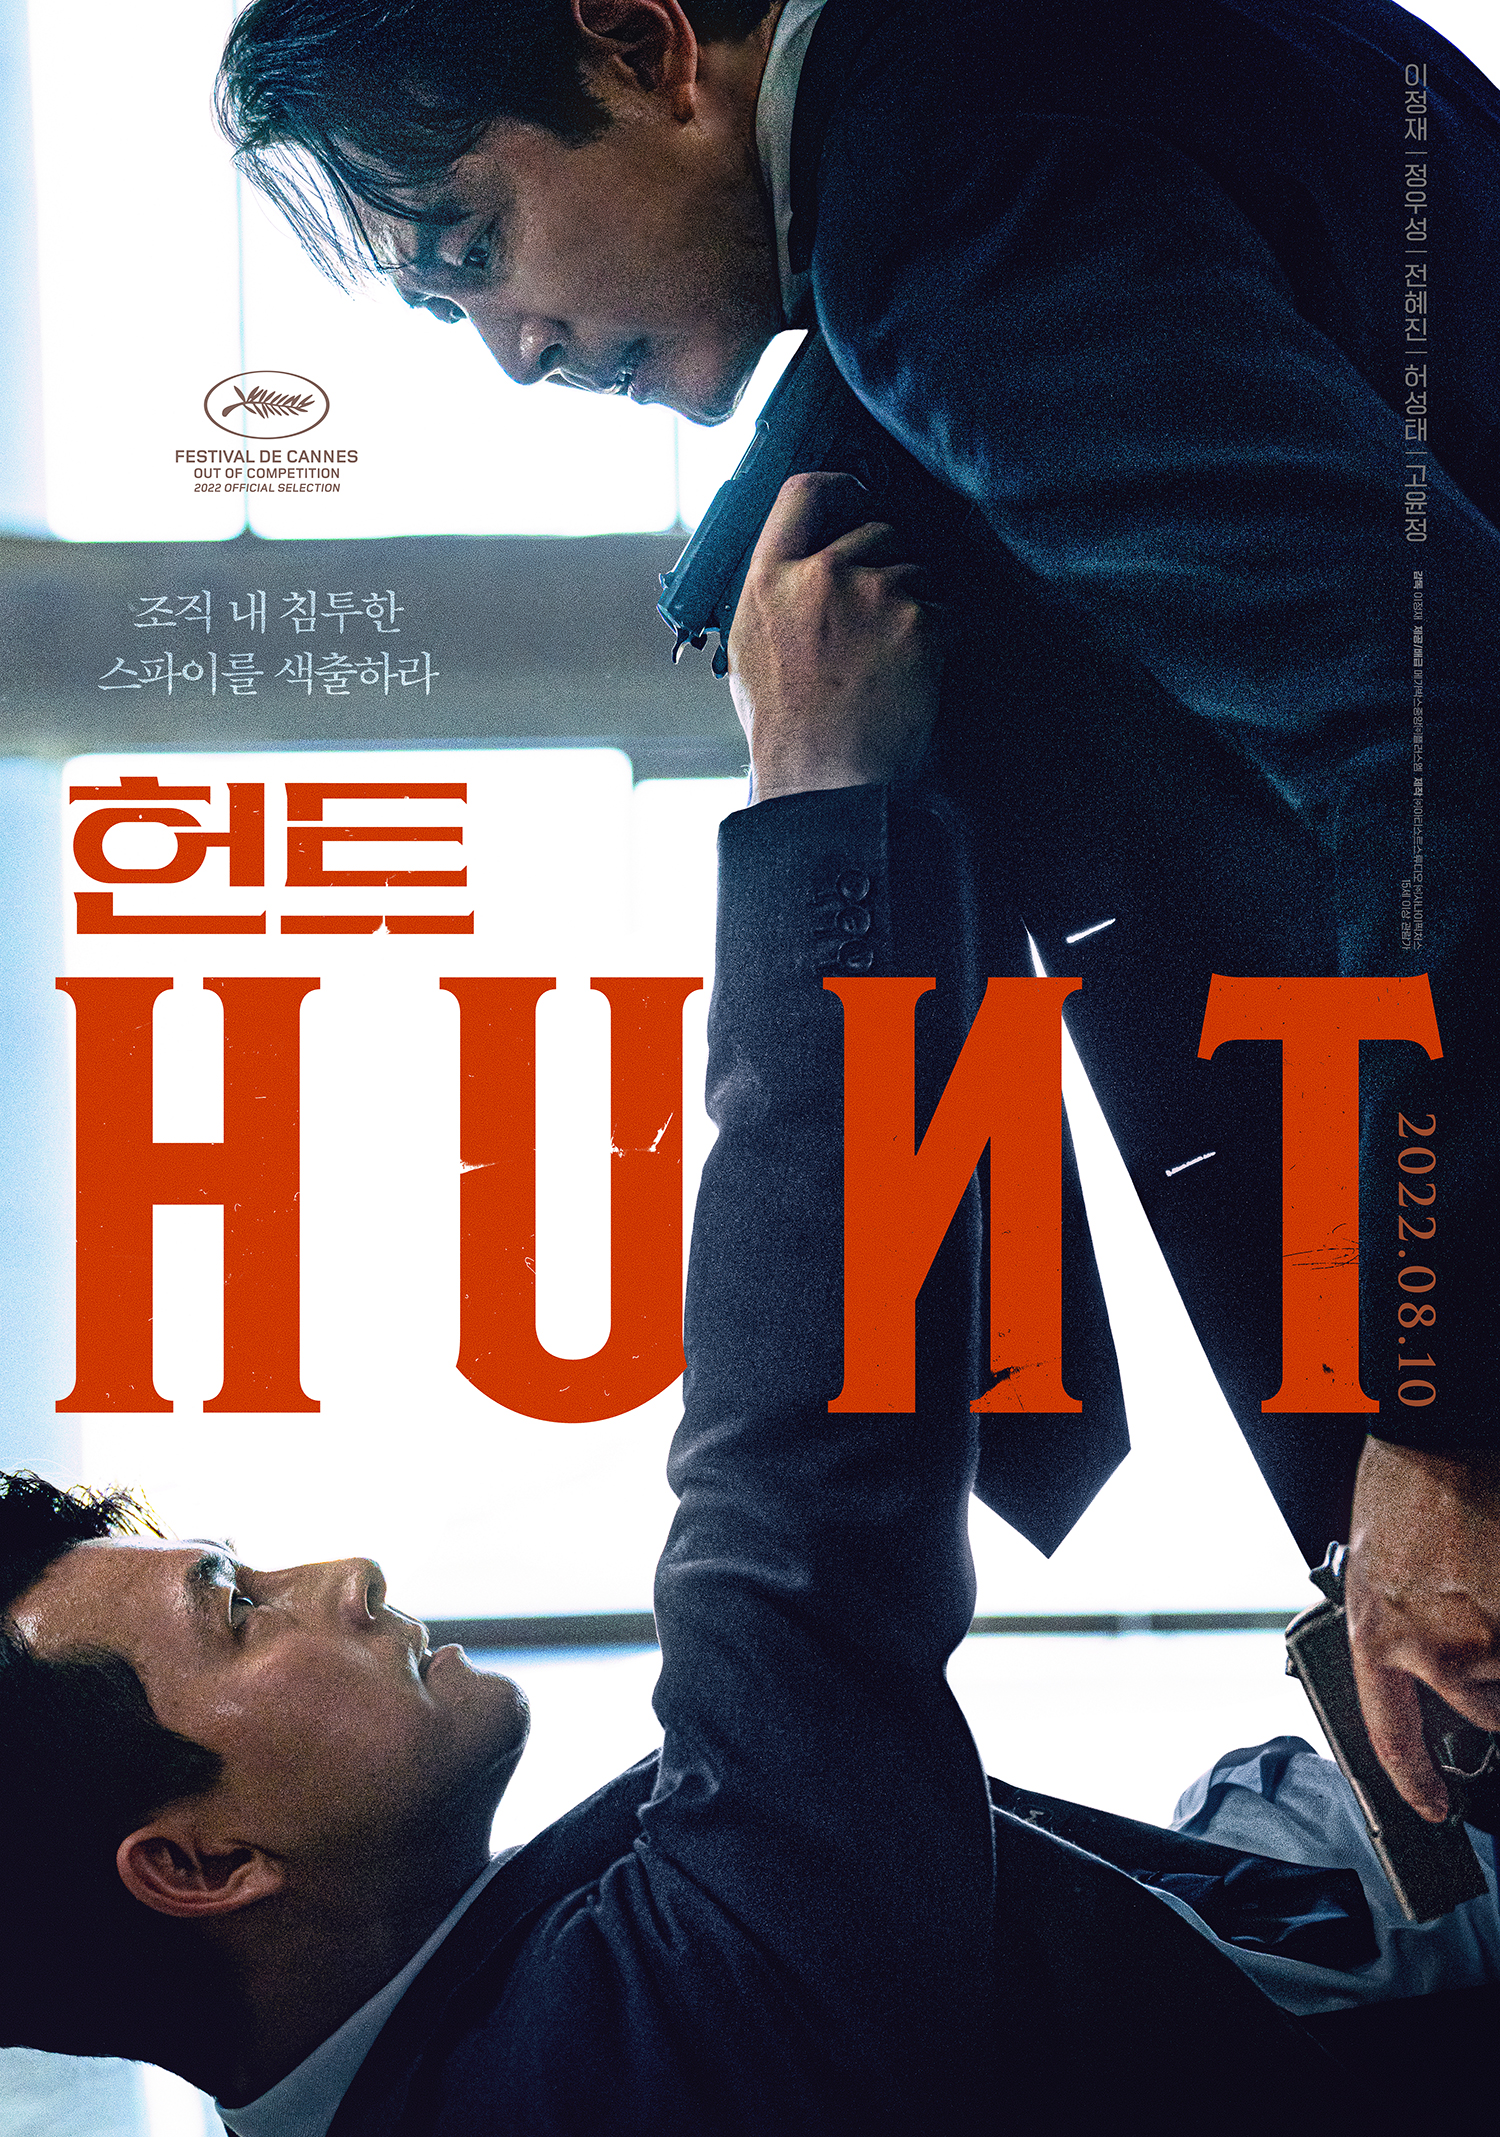 영화 헌트 HUNT의 이정재 정우성